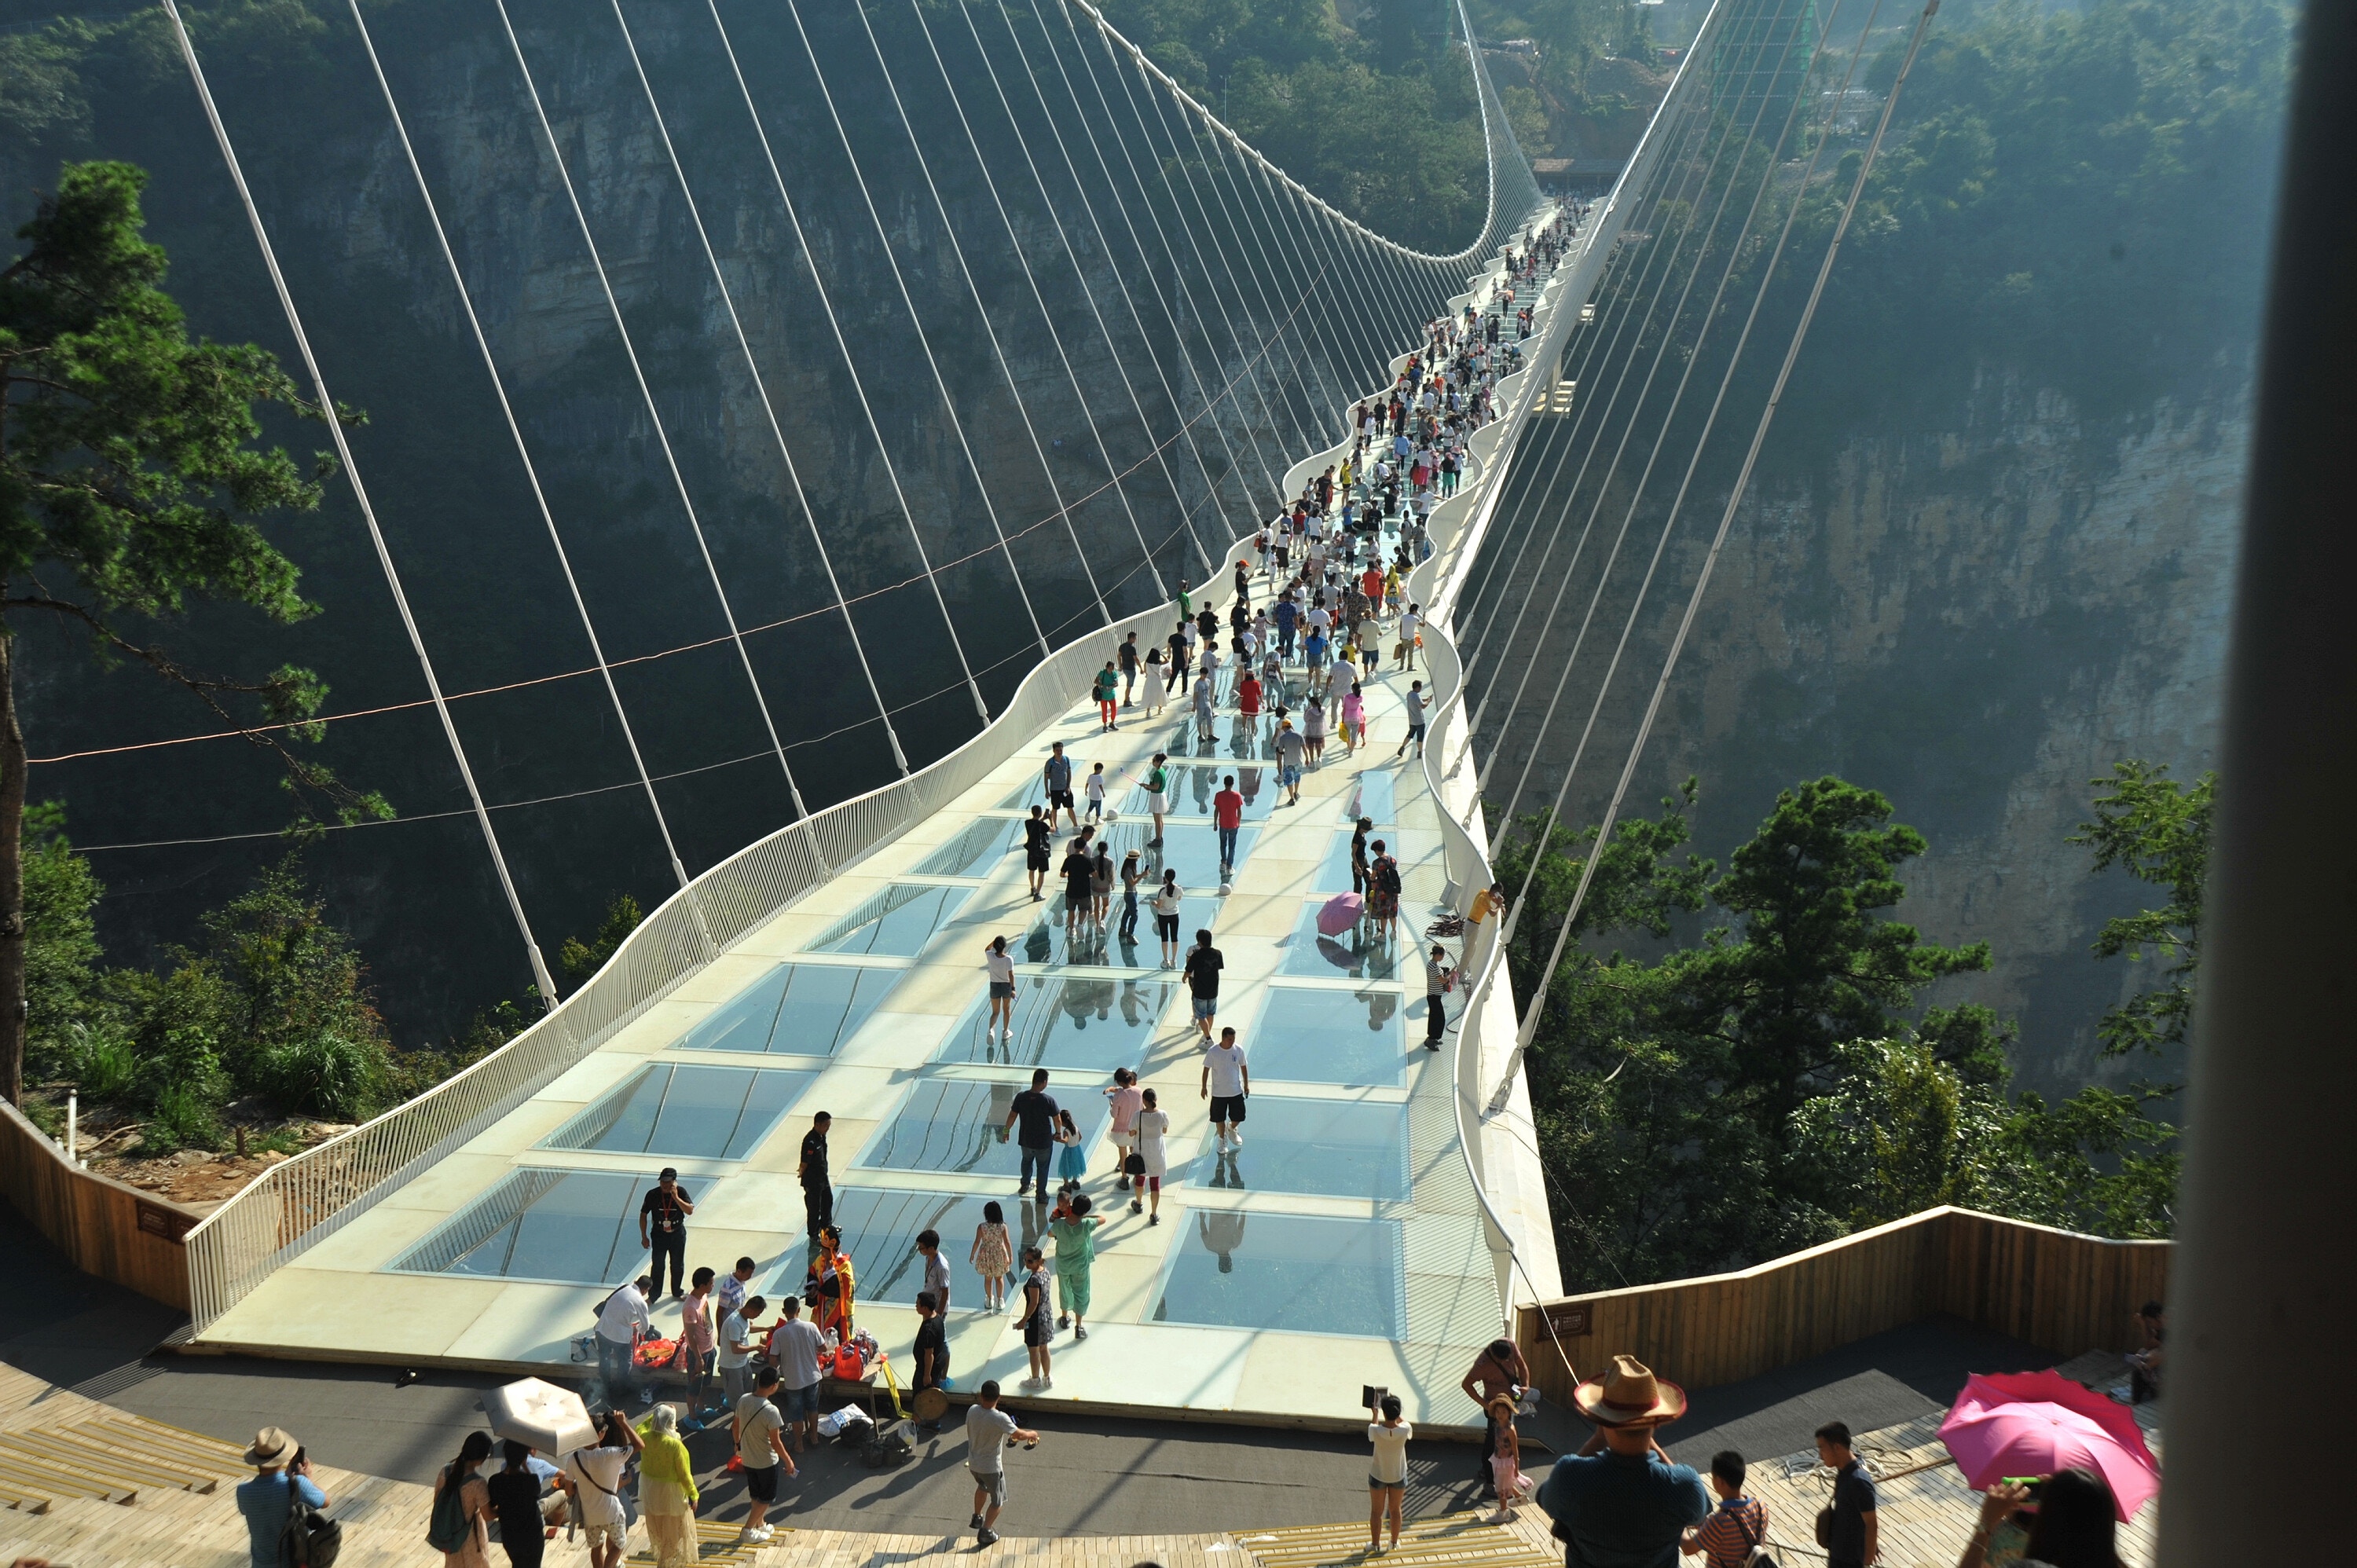 張家界大峽谷玻璃橋開幕試行期單次最多600人上橋